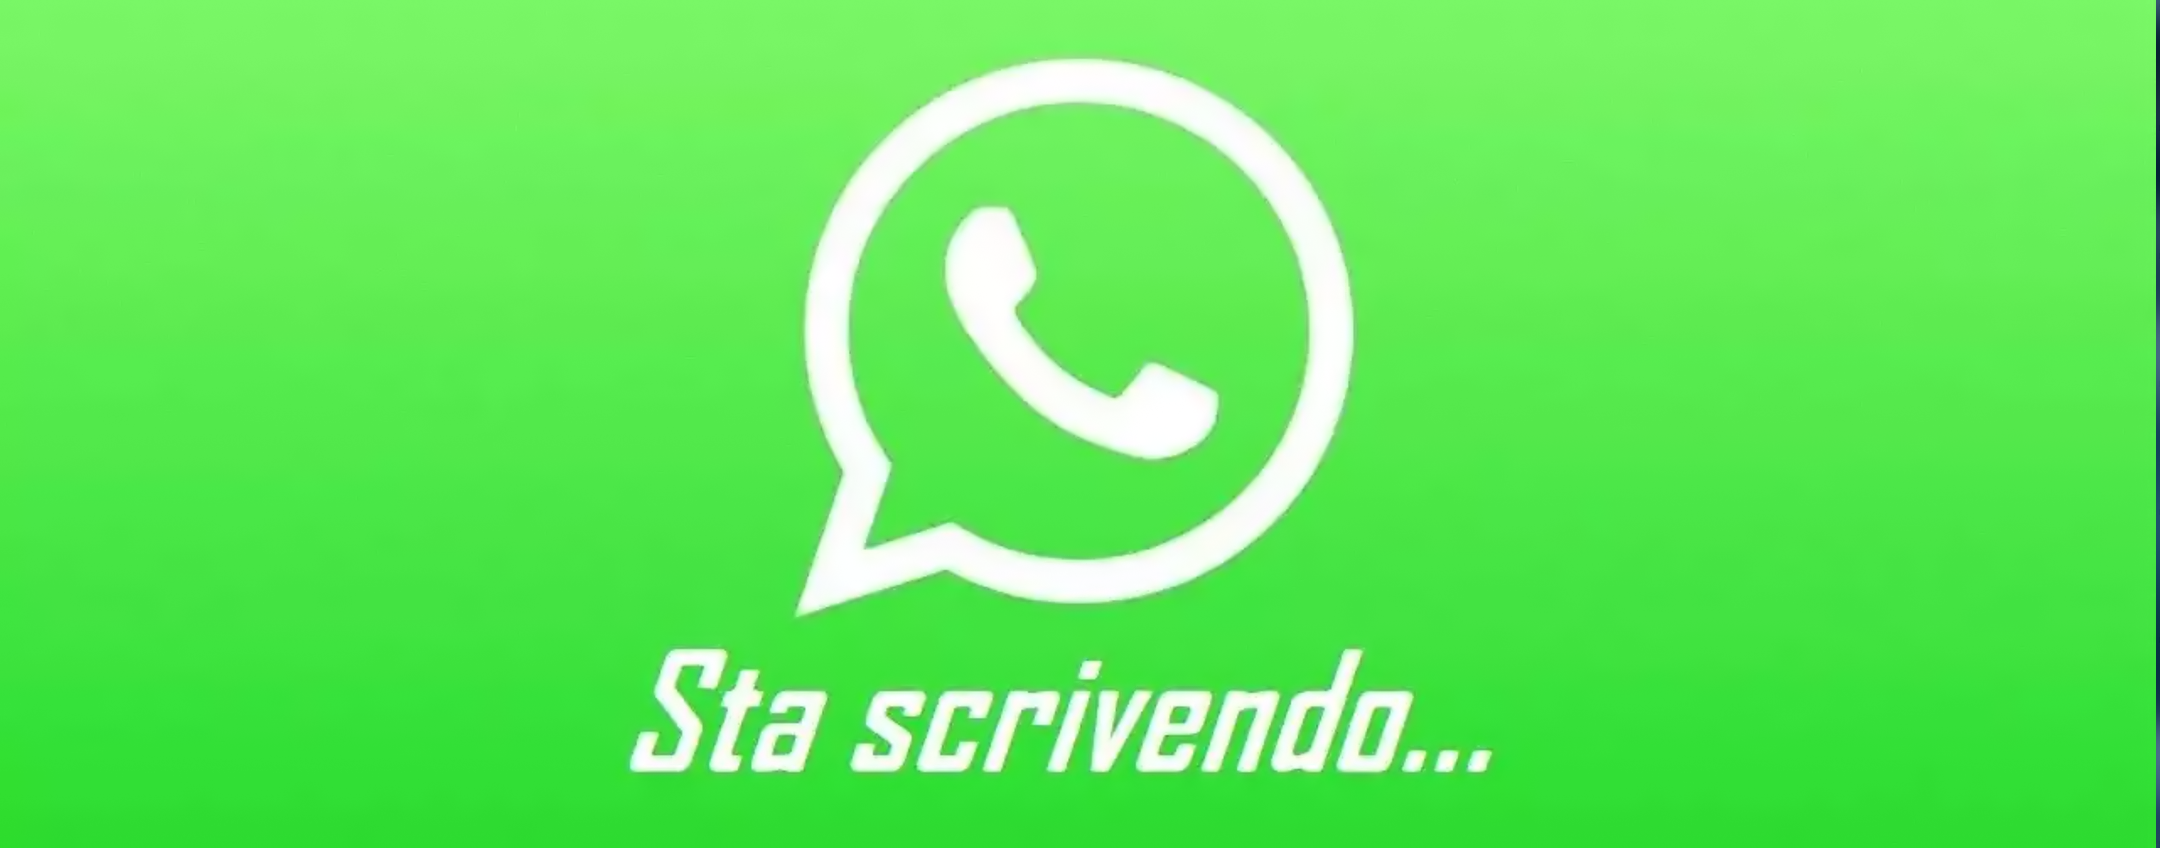 WhatsApp: il trucco per scrivere un messaggio senza farti vedere